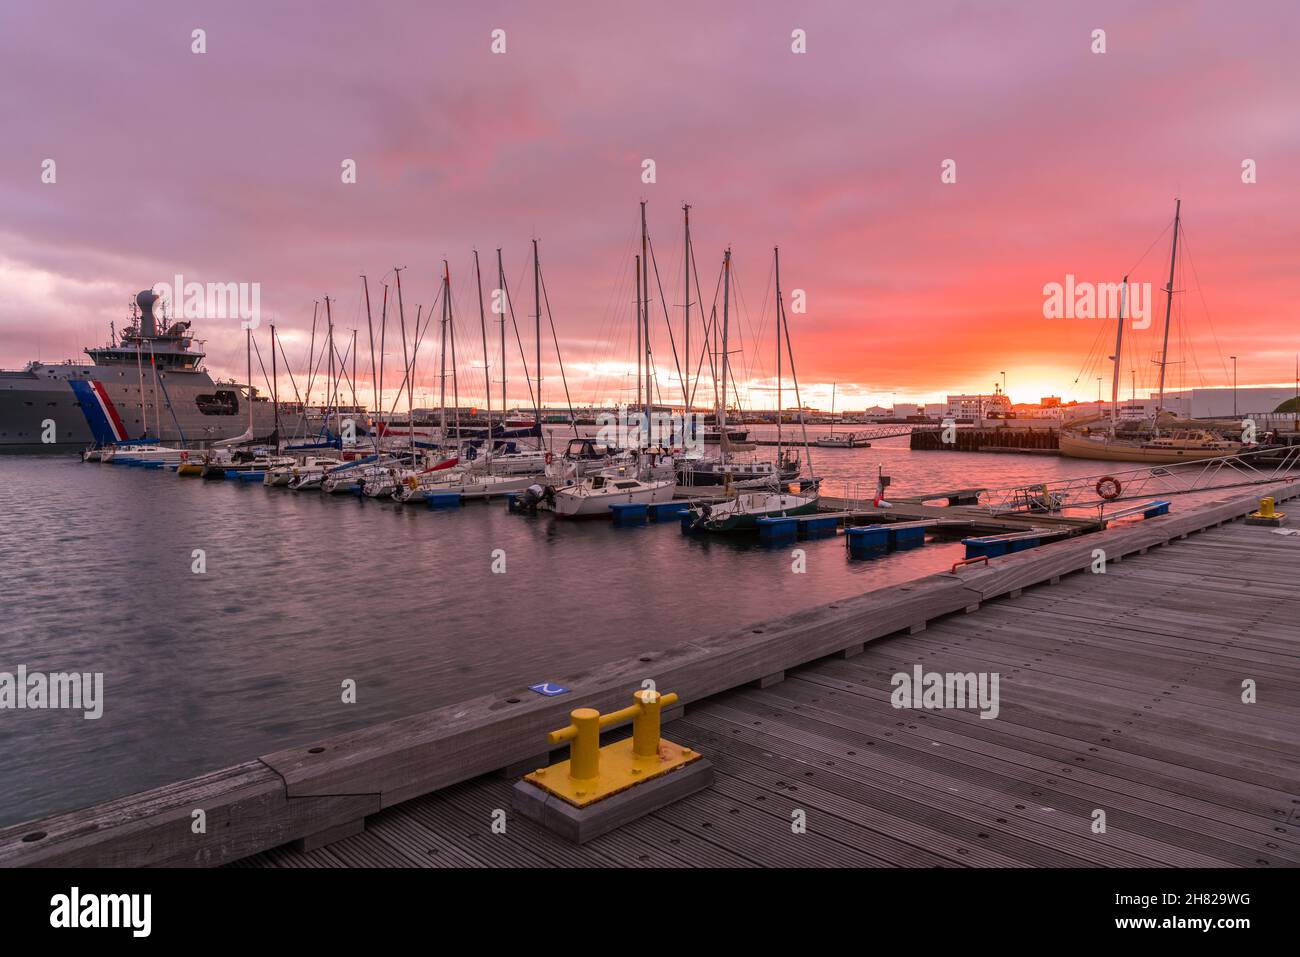 Dramatischer, farbenfroher Himmel über einem Hafen mit Segelbooten, die bei Sonnenuntergang an den Anlegestegen festgemacht sind Stockfoto